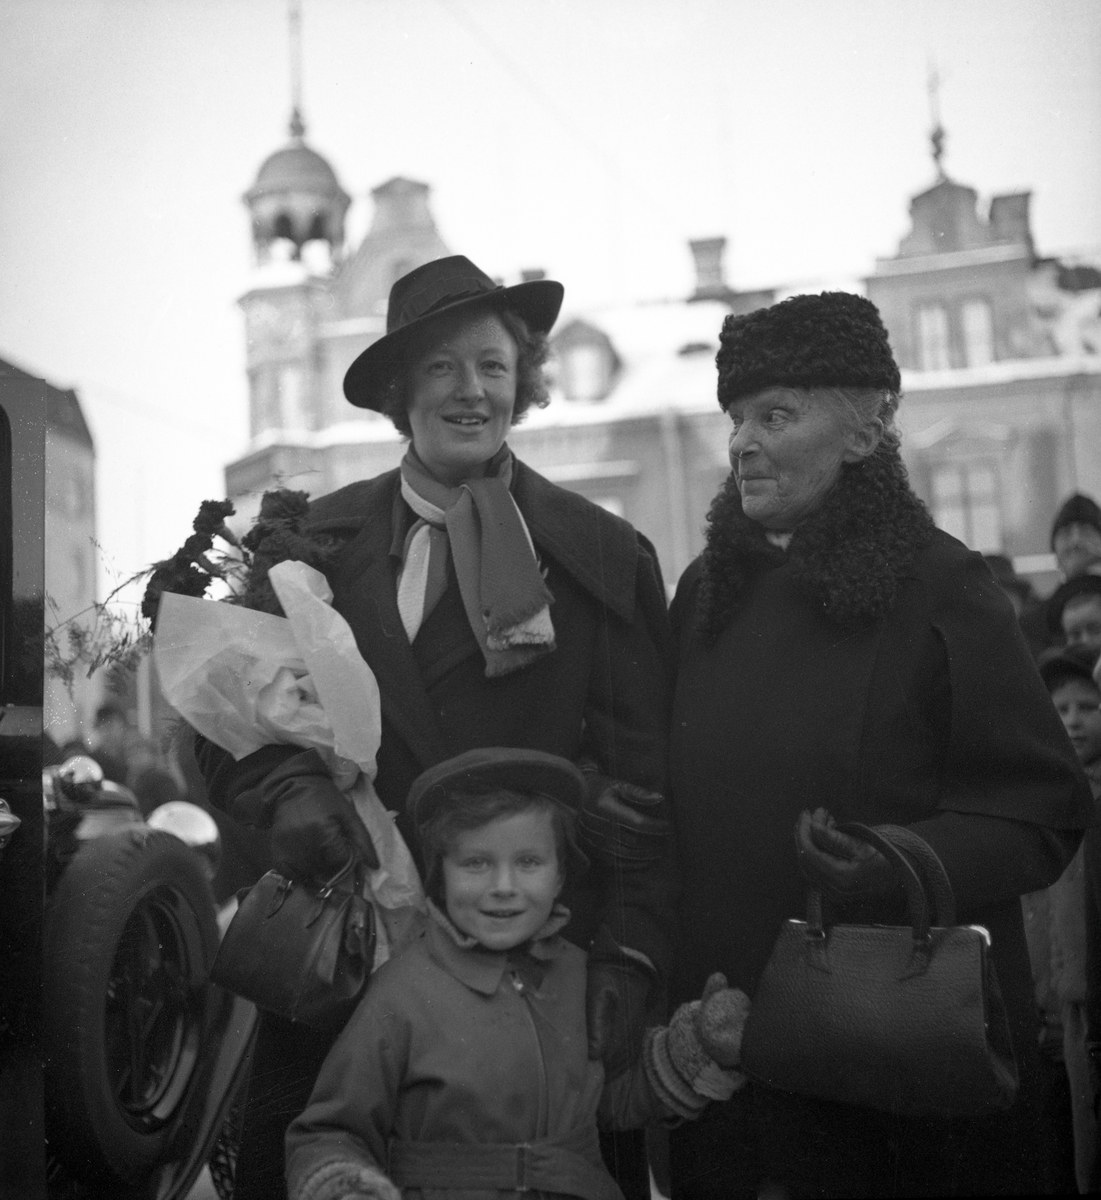 Kajsa Rothman från Karlstad på en bild från 1938. Hon var den första svenska medborgaren, som redan på plats i Barcelona, anmälde sig till frivilligttjänst i Röda Korset för regeringssidan dagen efter Francos kupp den 18 juli 1936. Samma år bilden togs genomförde hon en föredragsturné med 135 möten och över 50000 åhörare till fömån för regeringssidan i Spanien.